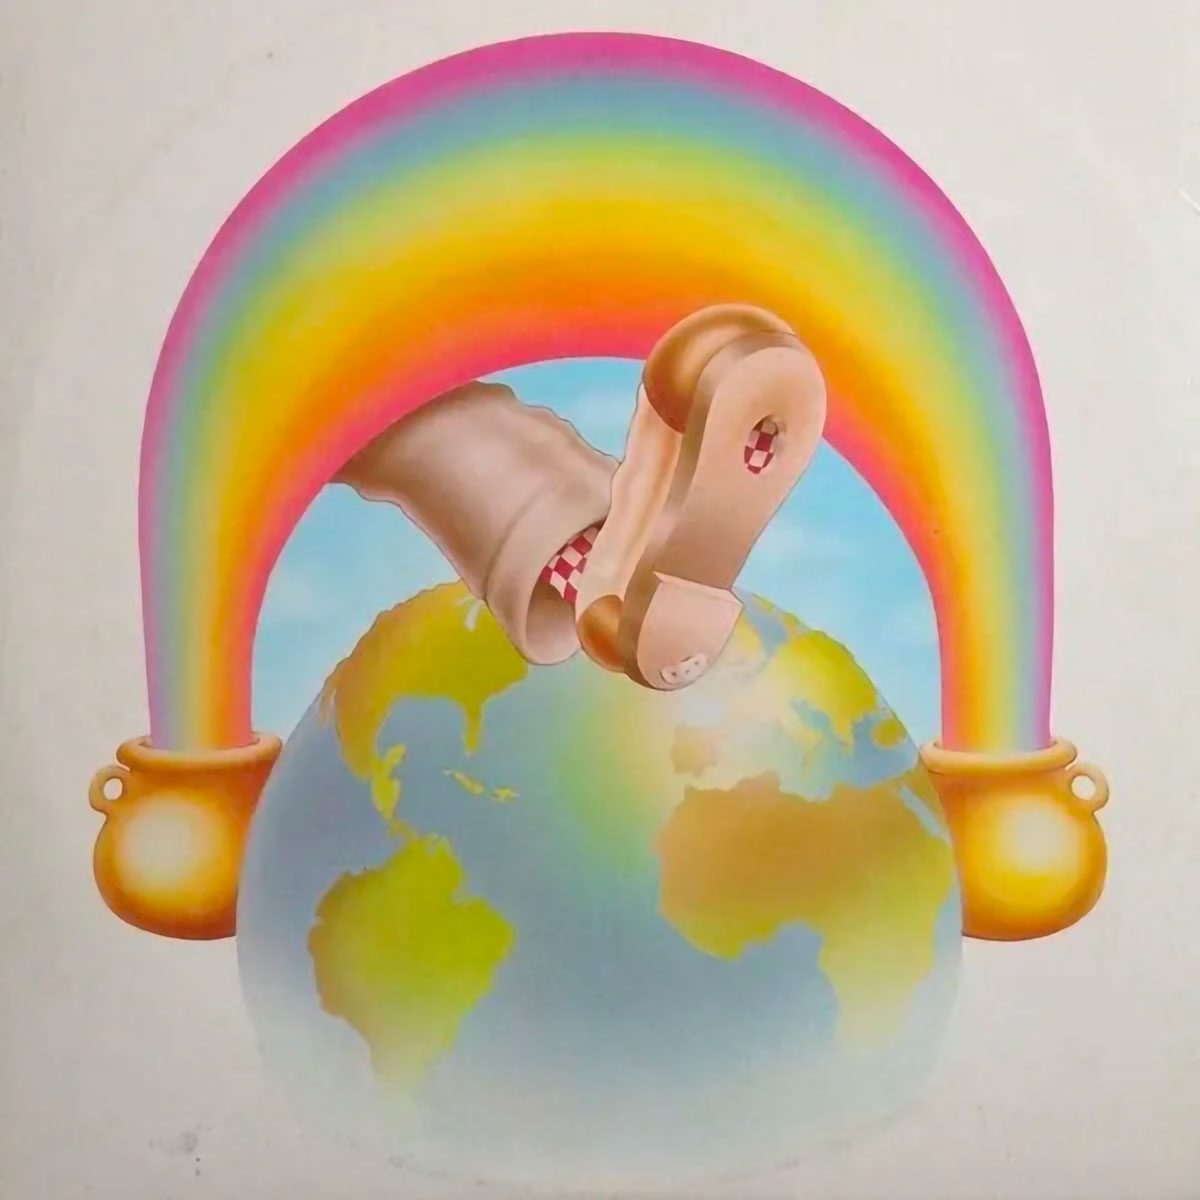 Grateful Dead – Europe ’72 cover album